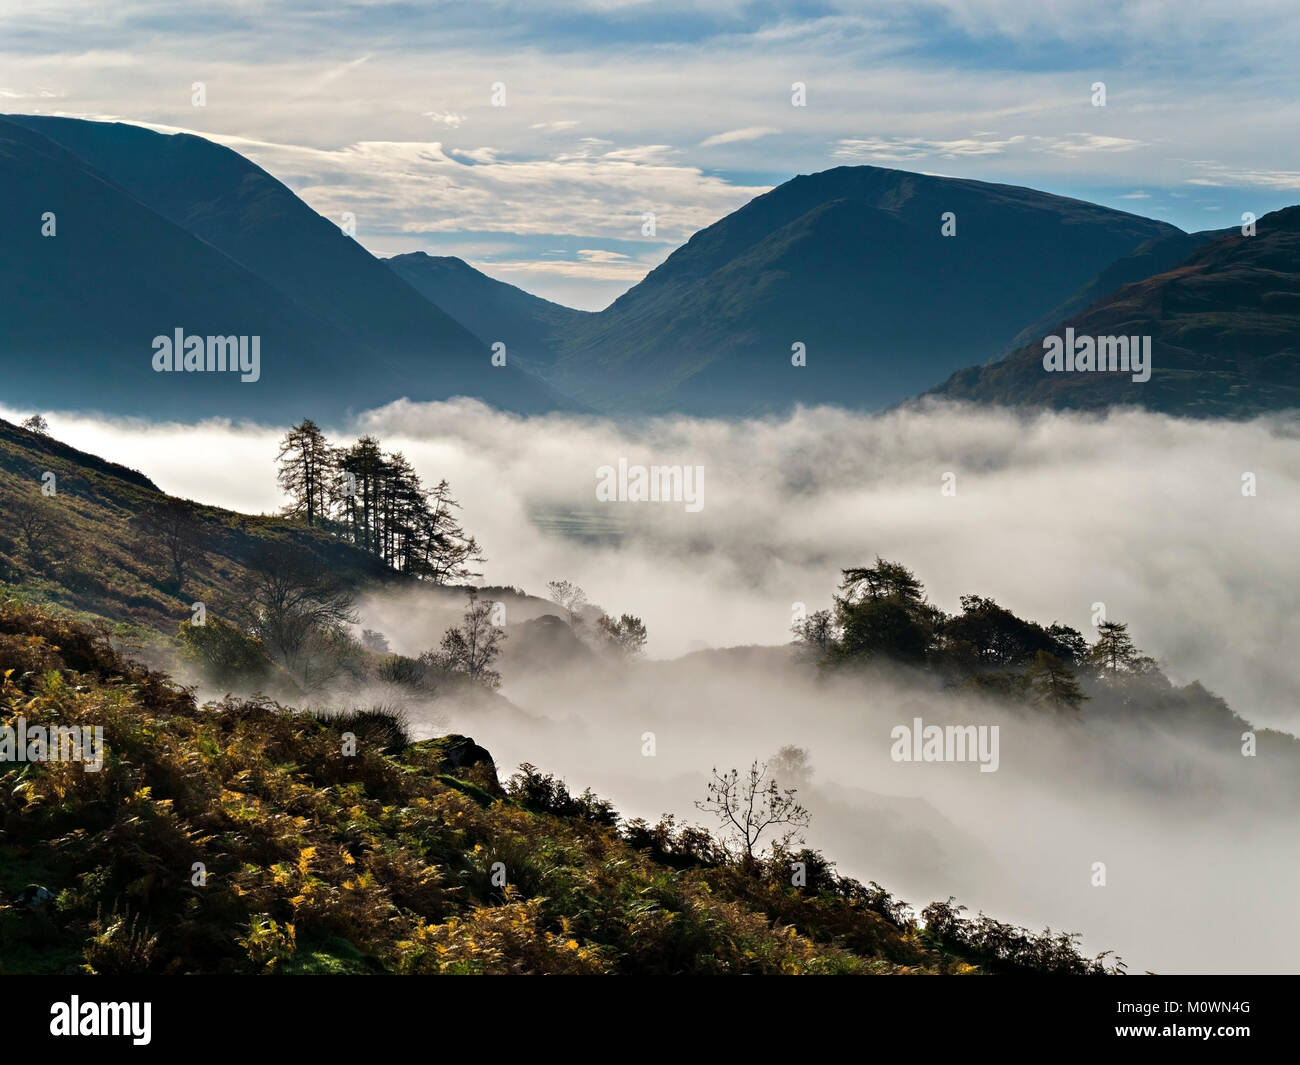 De haut en bas sur le faible niveau de la brume matinale dans la vallée Patterdale dans le Lake District, Shap, Cumbria, England, UK Banque D'Images